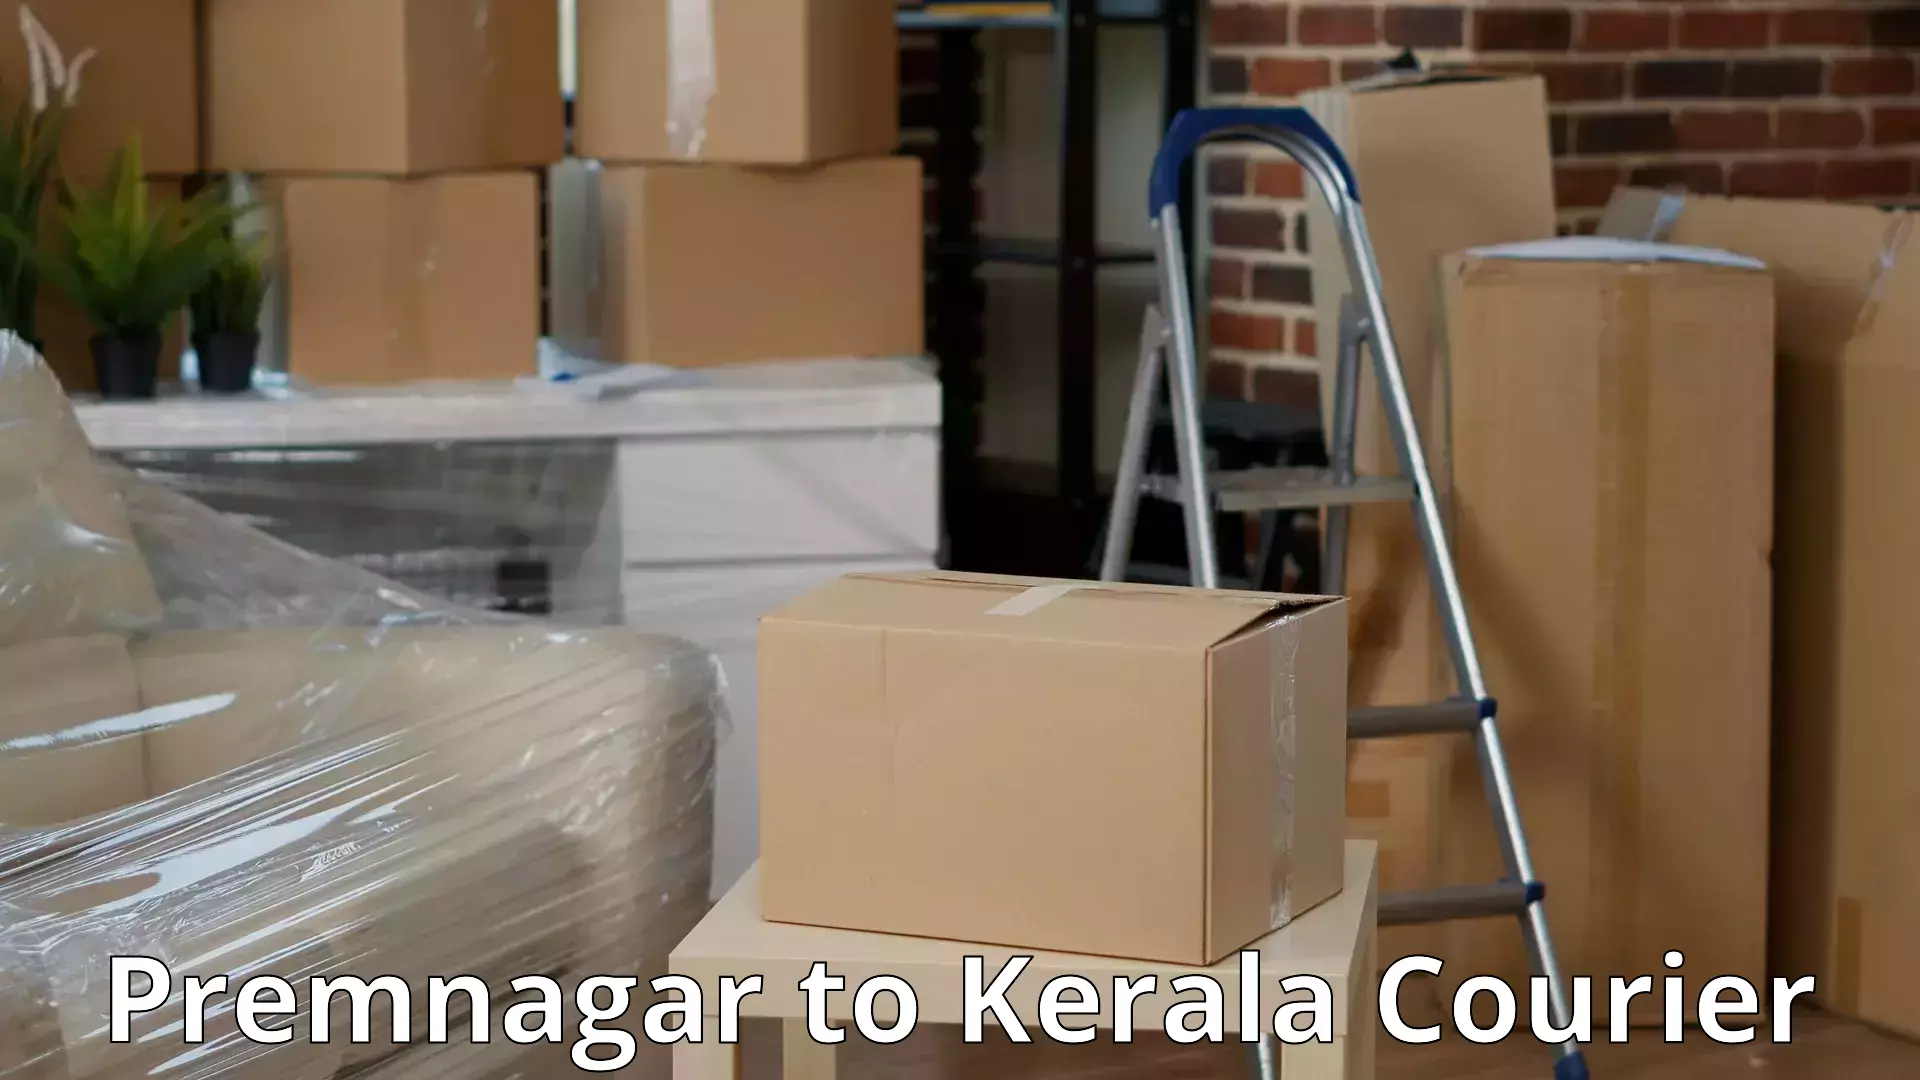 Efficient household moving Premnagar to Kottayam